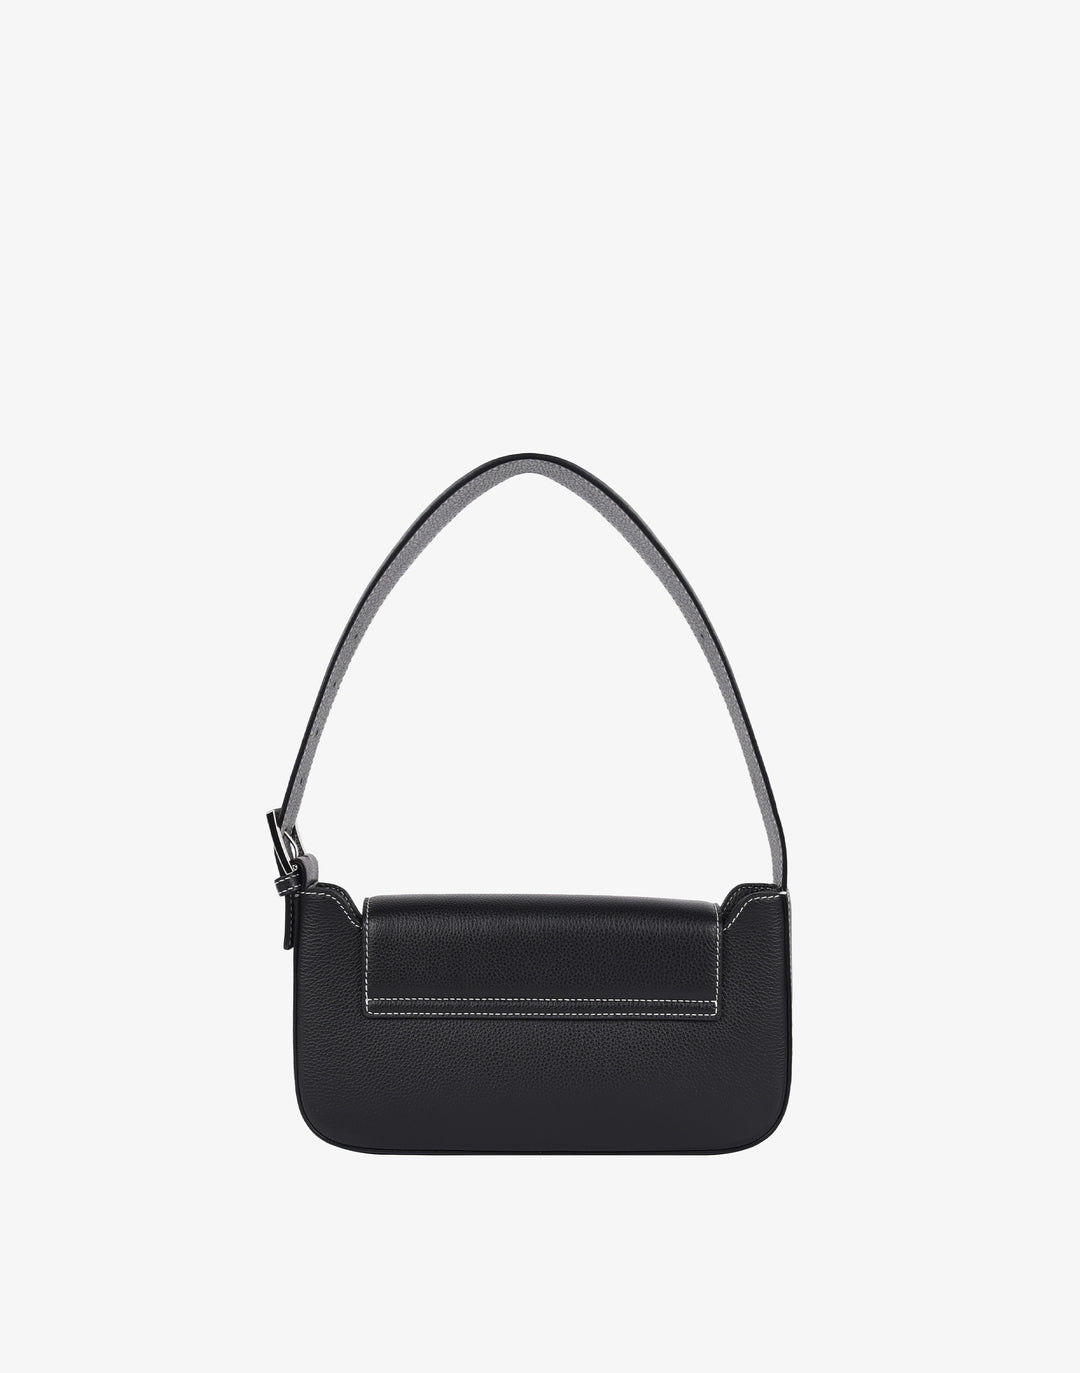 Baguette leather handbag